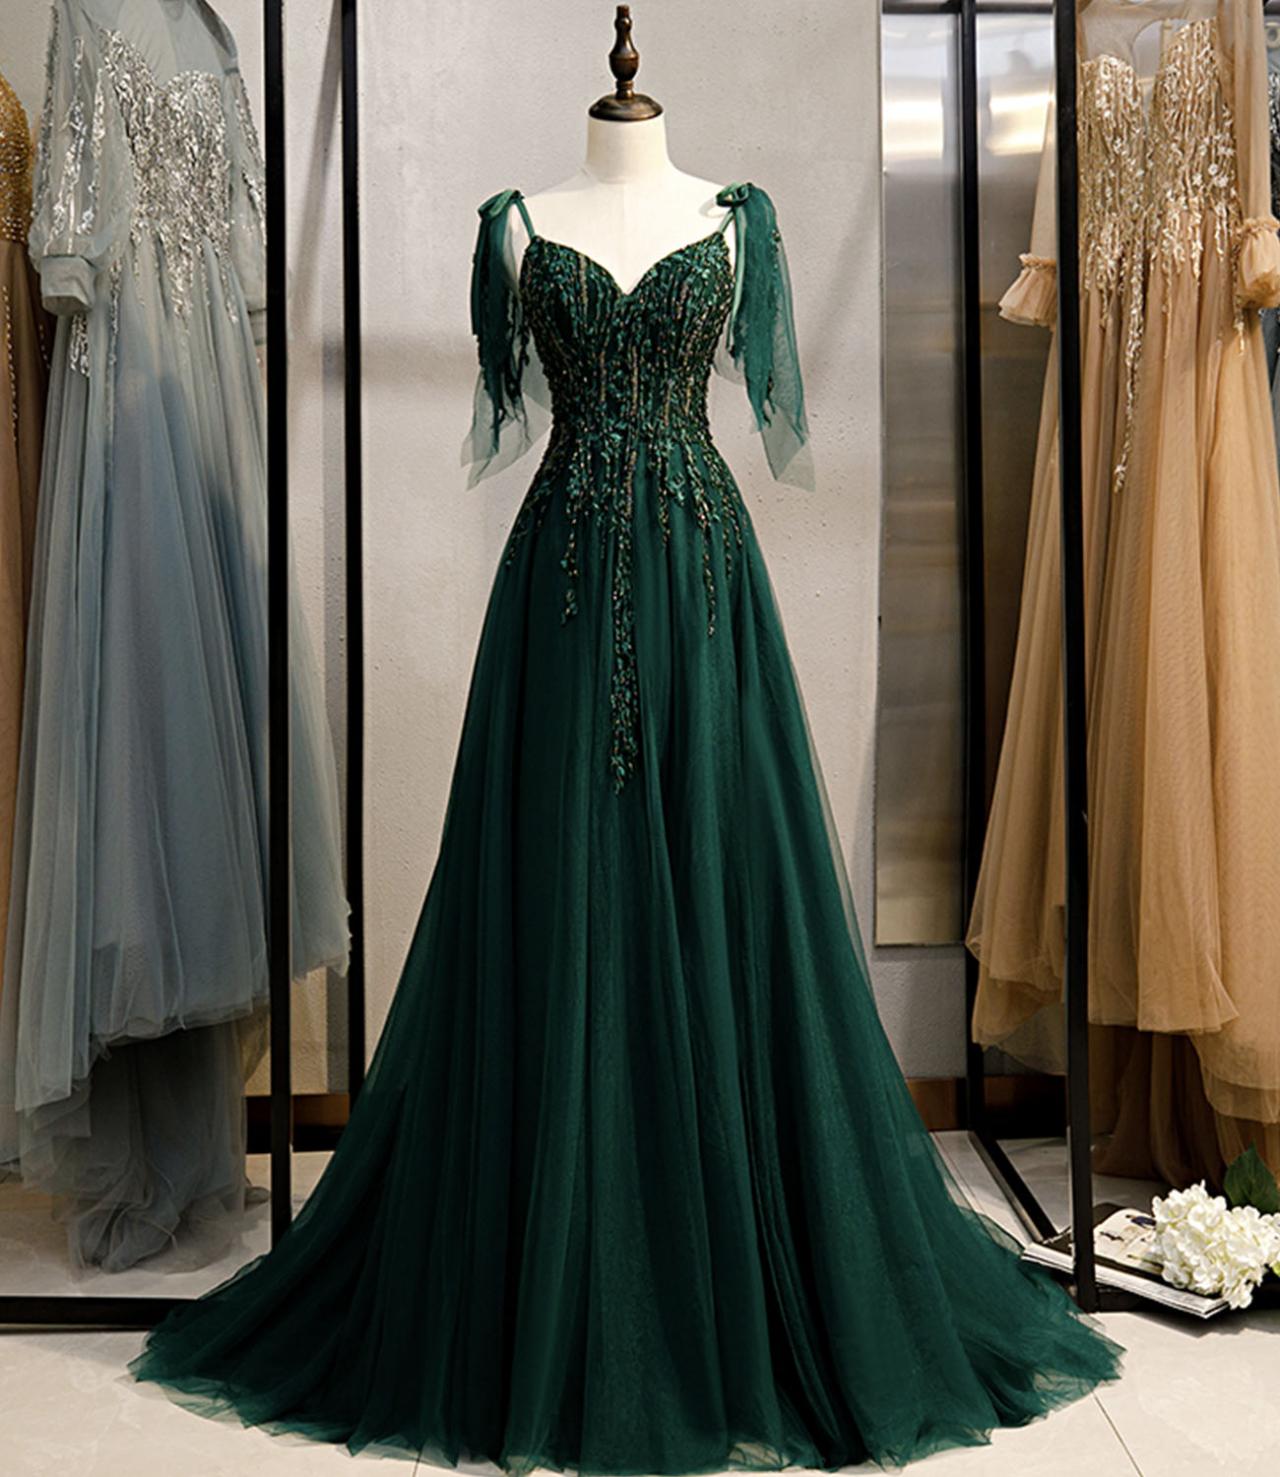 Robe De Soirée Green Vintage Prom Dresses A Line Tulle Lace Applique Beaded Elegant Prom Gown Vestido Longo Festa De Casamento